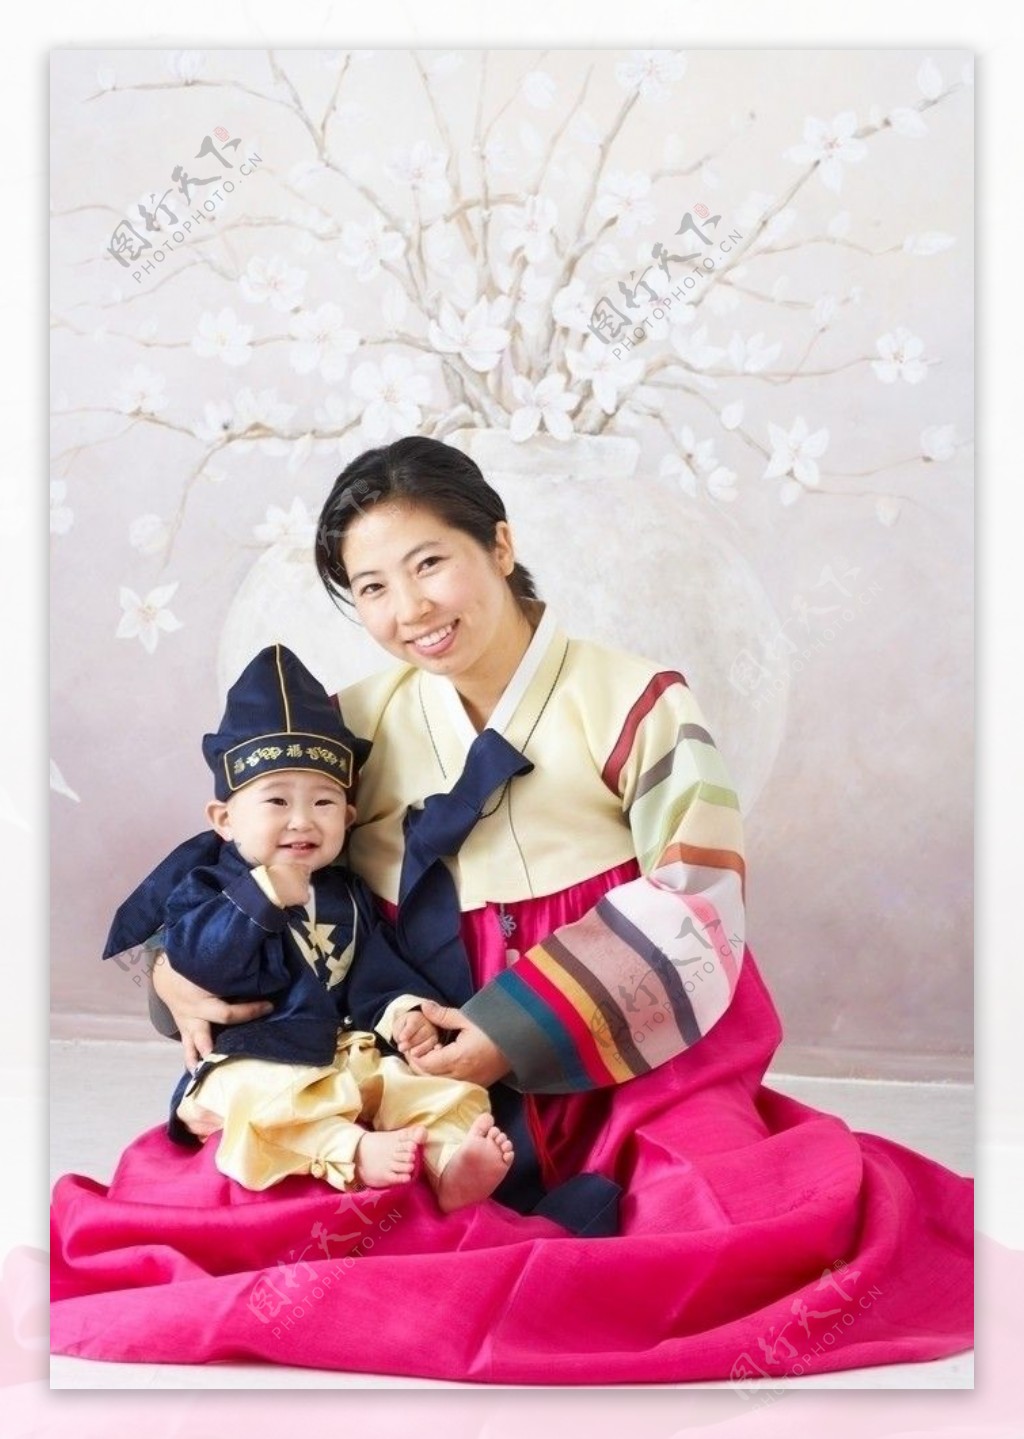 韩国民族服饰的亲子摄影写真图片